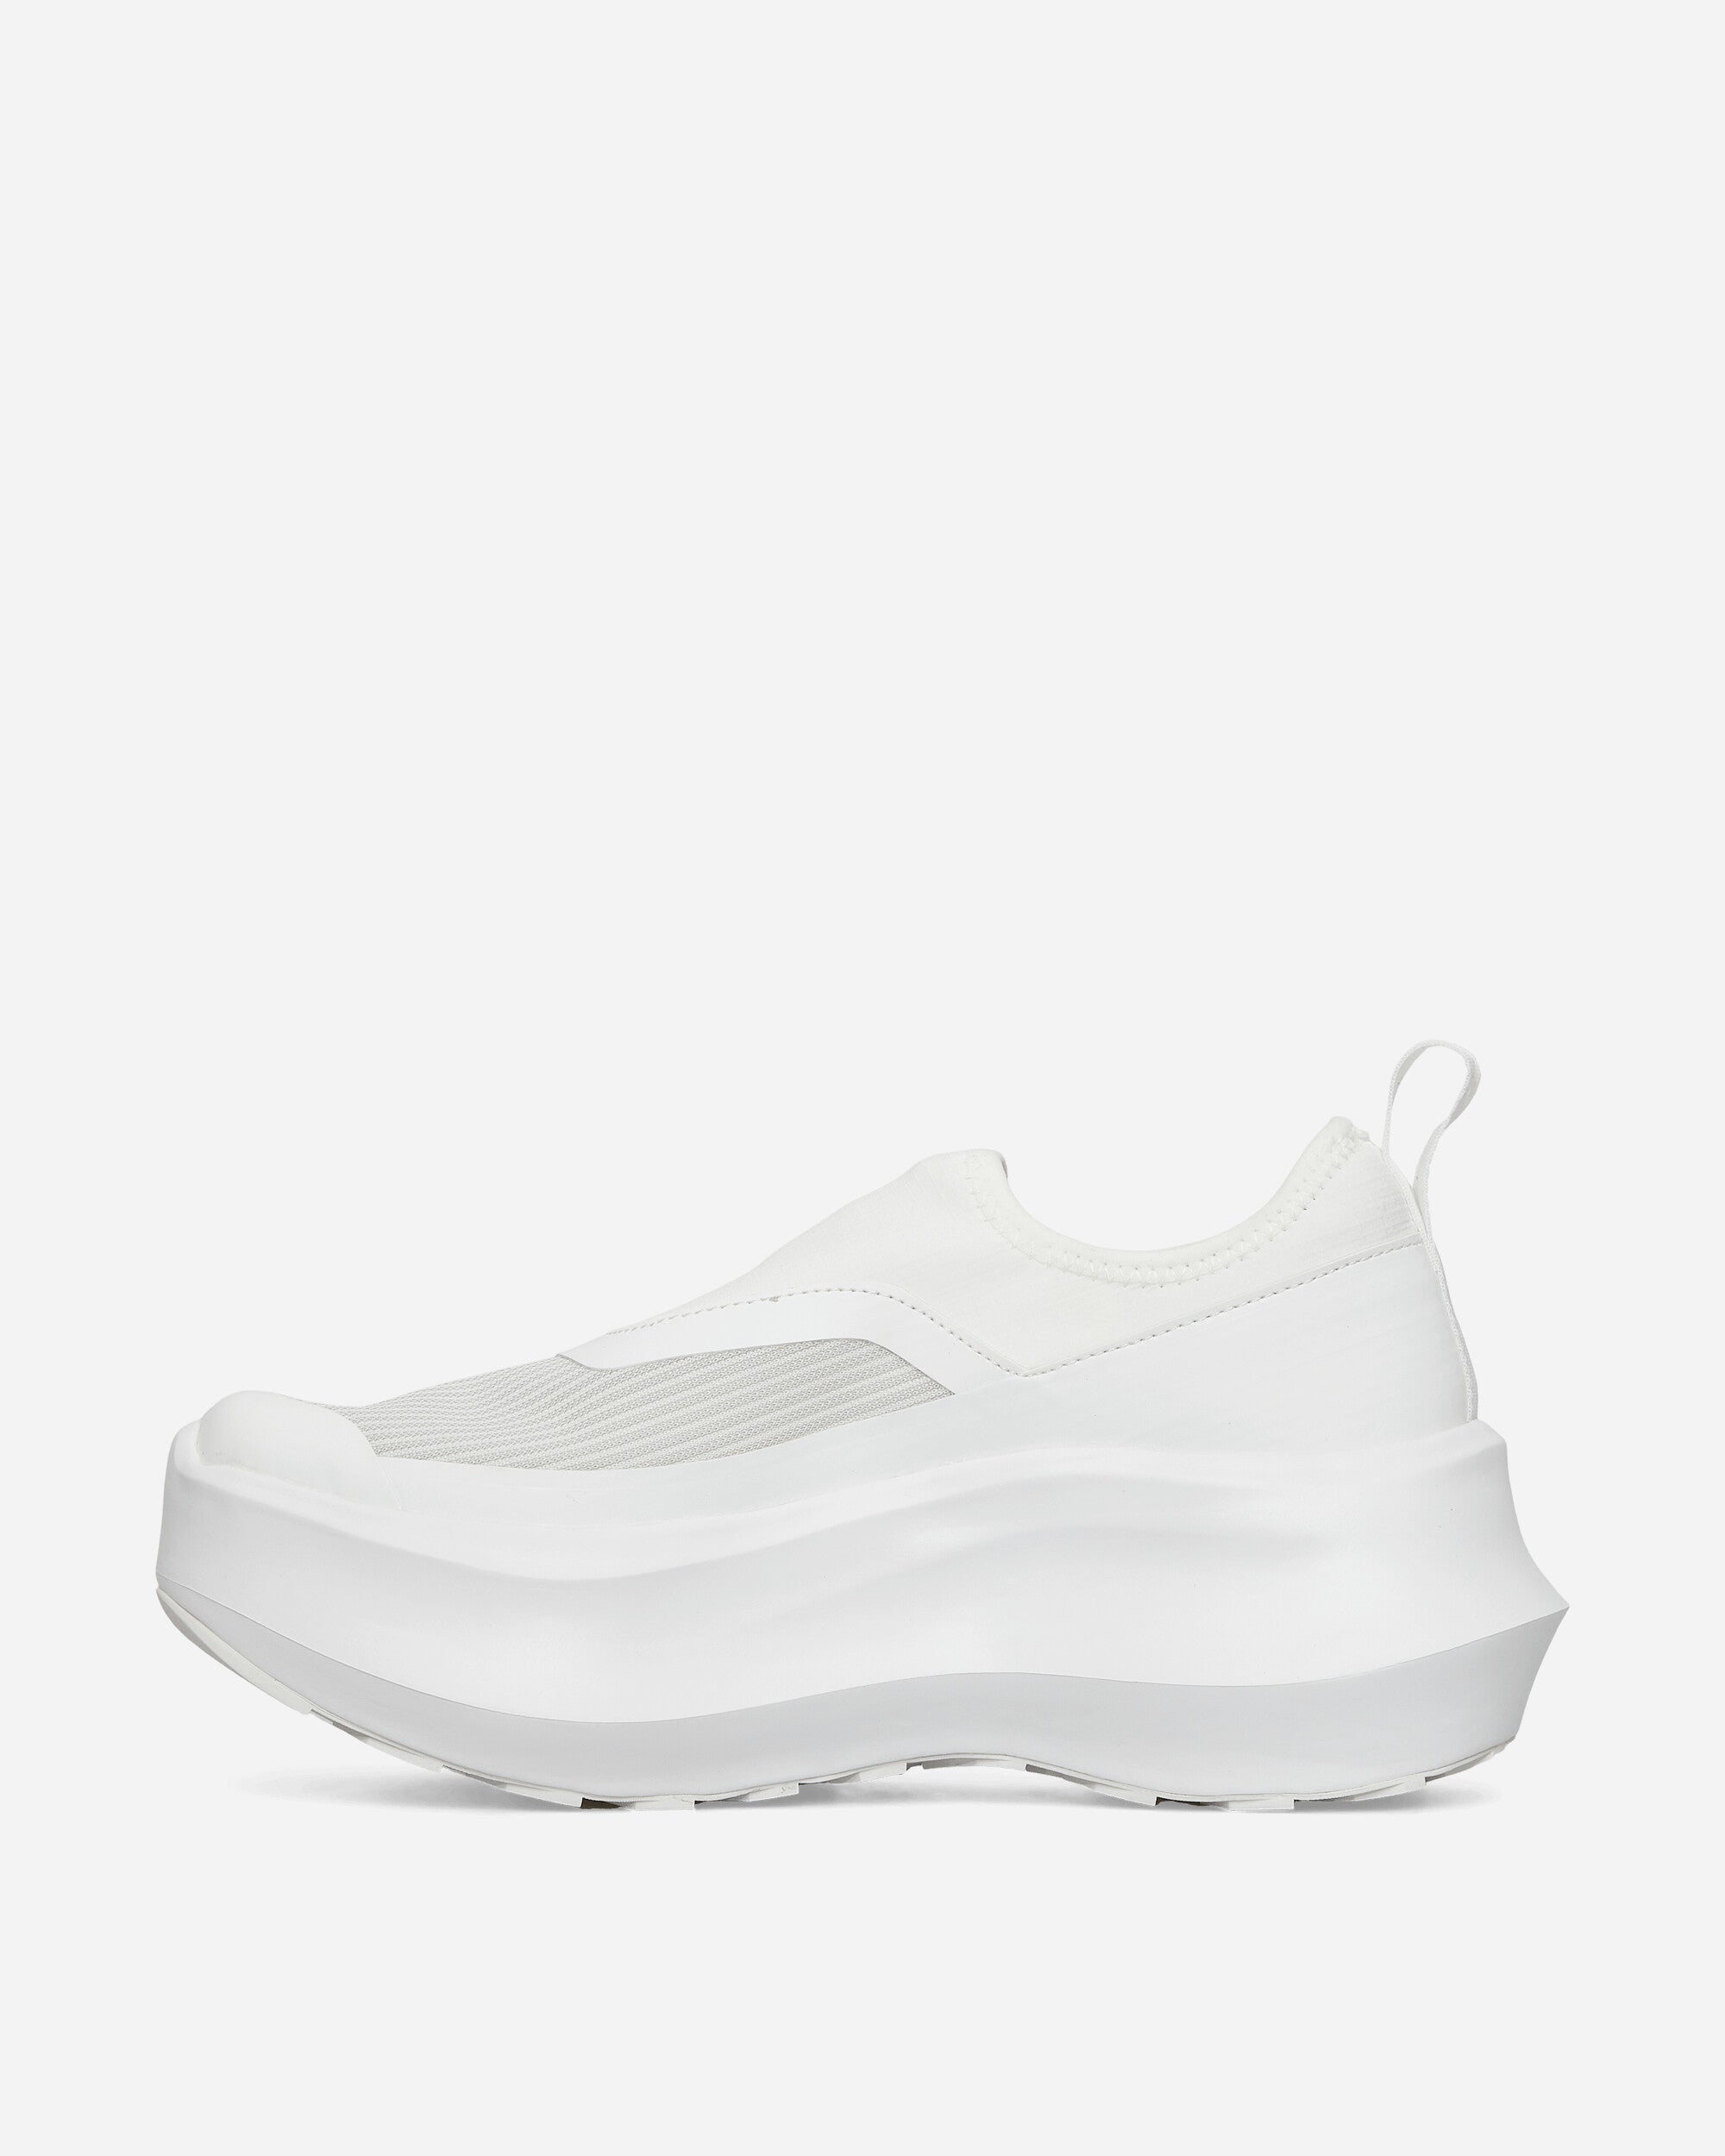 Comme Des Garçons Homme Salomon Slip On Platform X Cdg White Sneakers Slip-On GL-K103 002